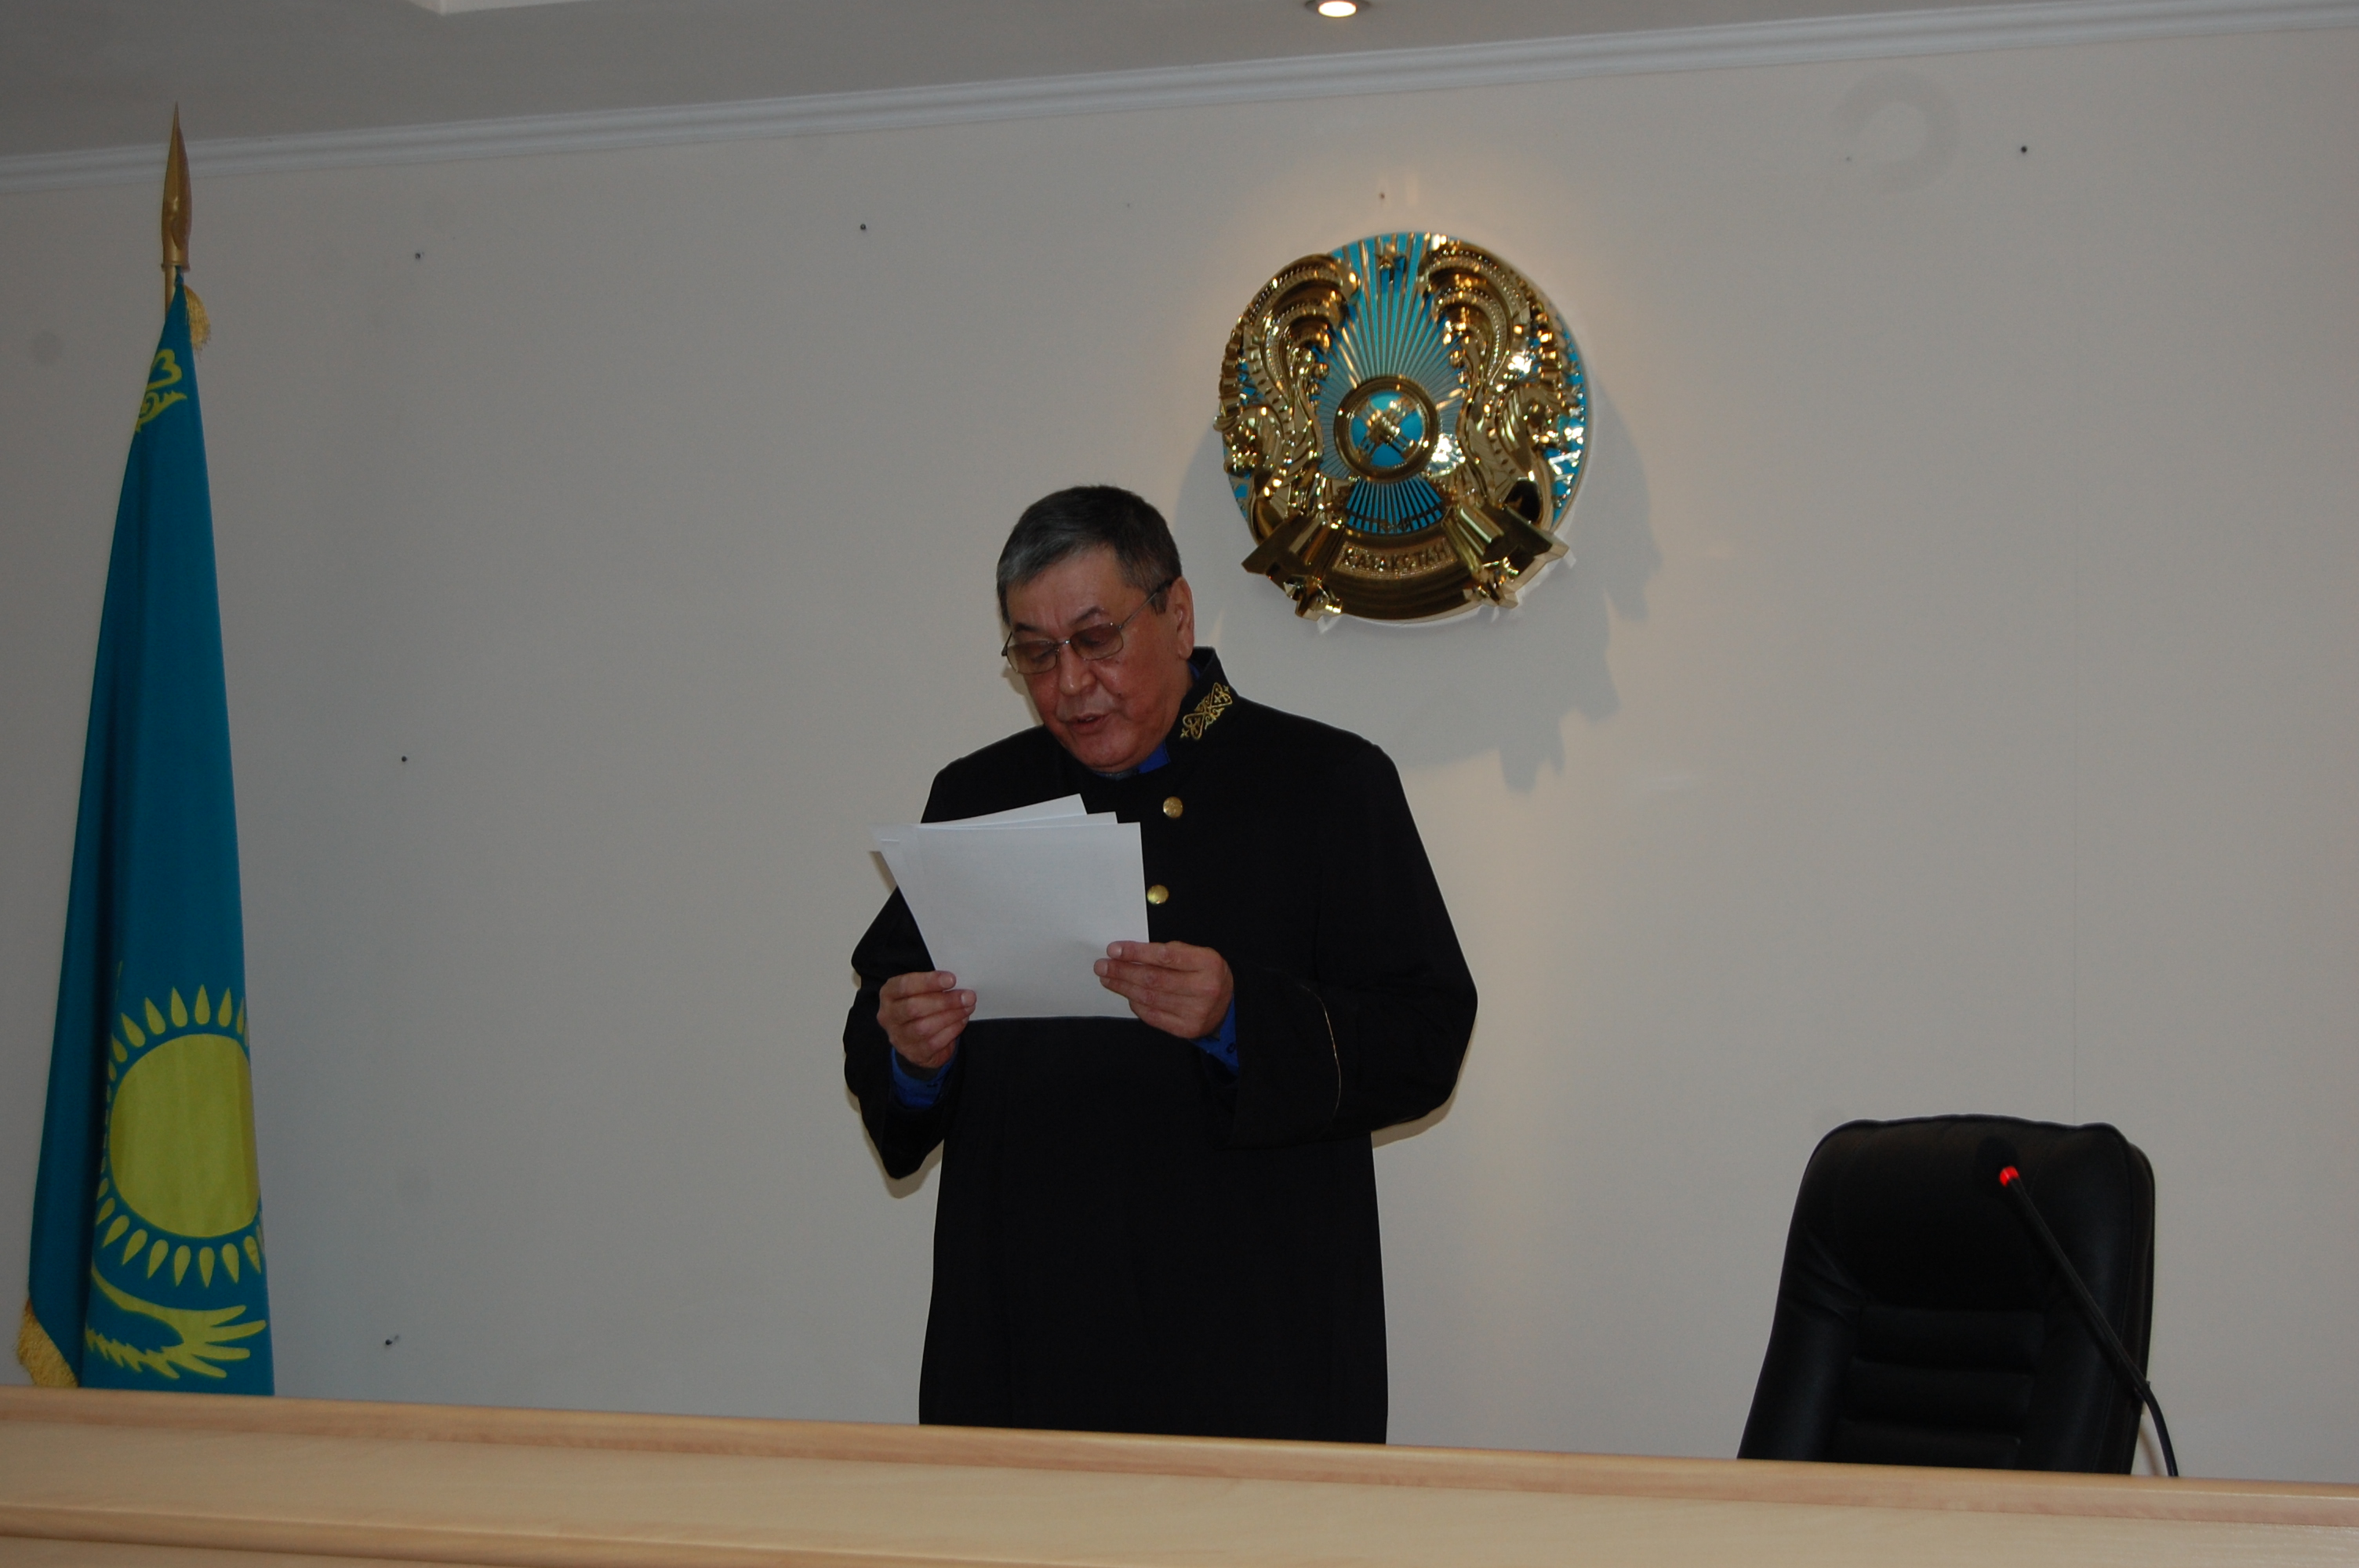 Кайрата Успанова, с которого сняли обвинение в коррупционном преступлении, суд приговорил к пяти годам условно